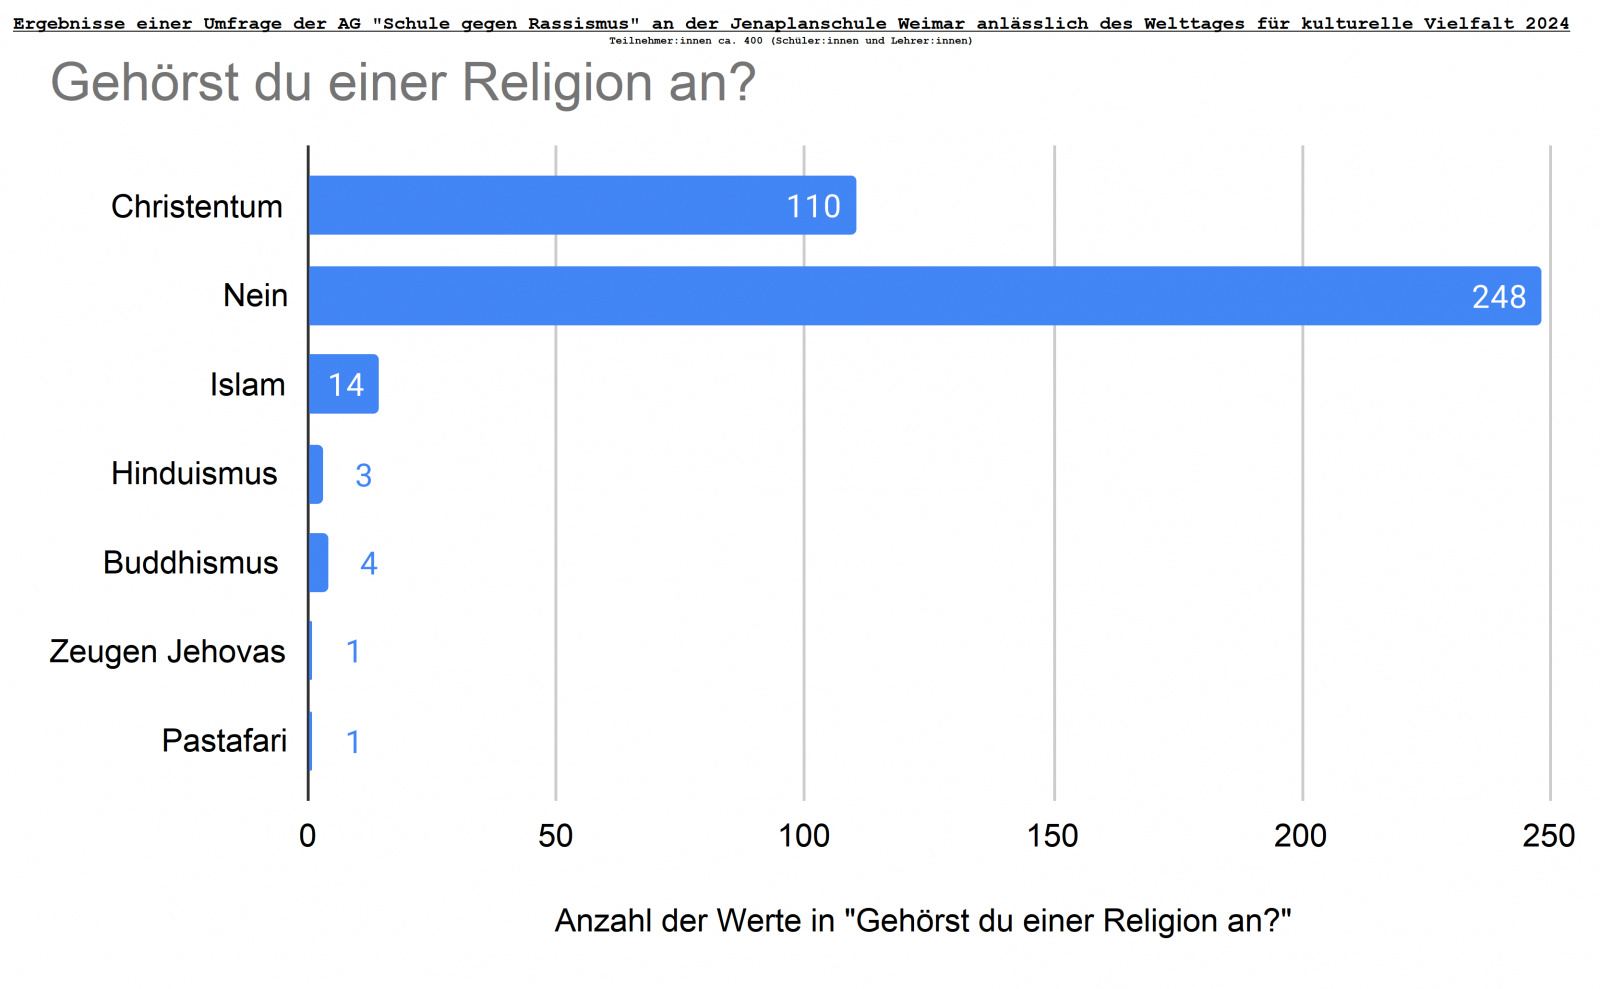 Umfrage_Welttag_kulturelle_Vielfalt_Gehörst du einer Religion an, Bild: AG Schule gegen Rassismus